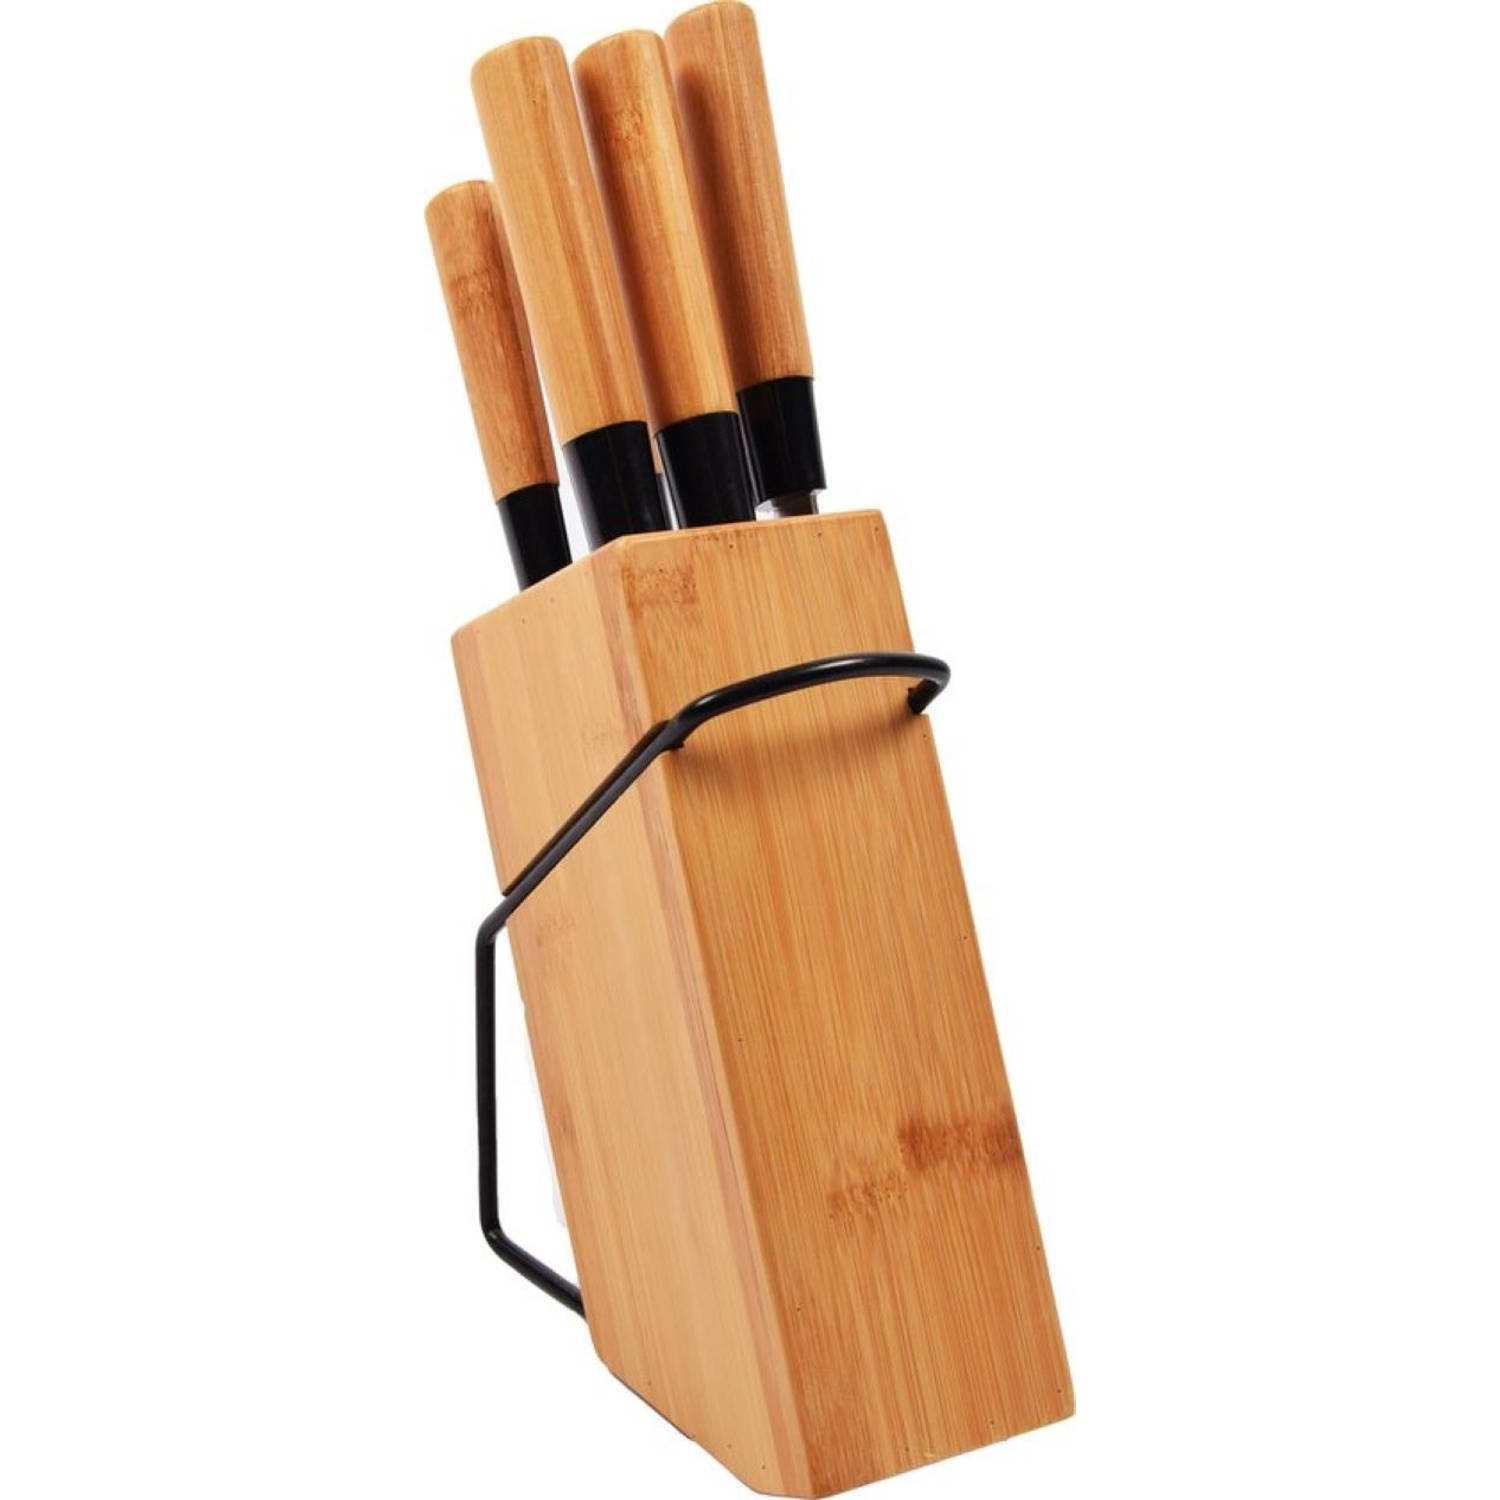 Messenset met blok 5 delig bamboe Messen RVS koksmes broodmes snijmes schilmes messenset kopenbamboe